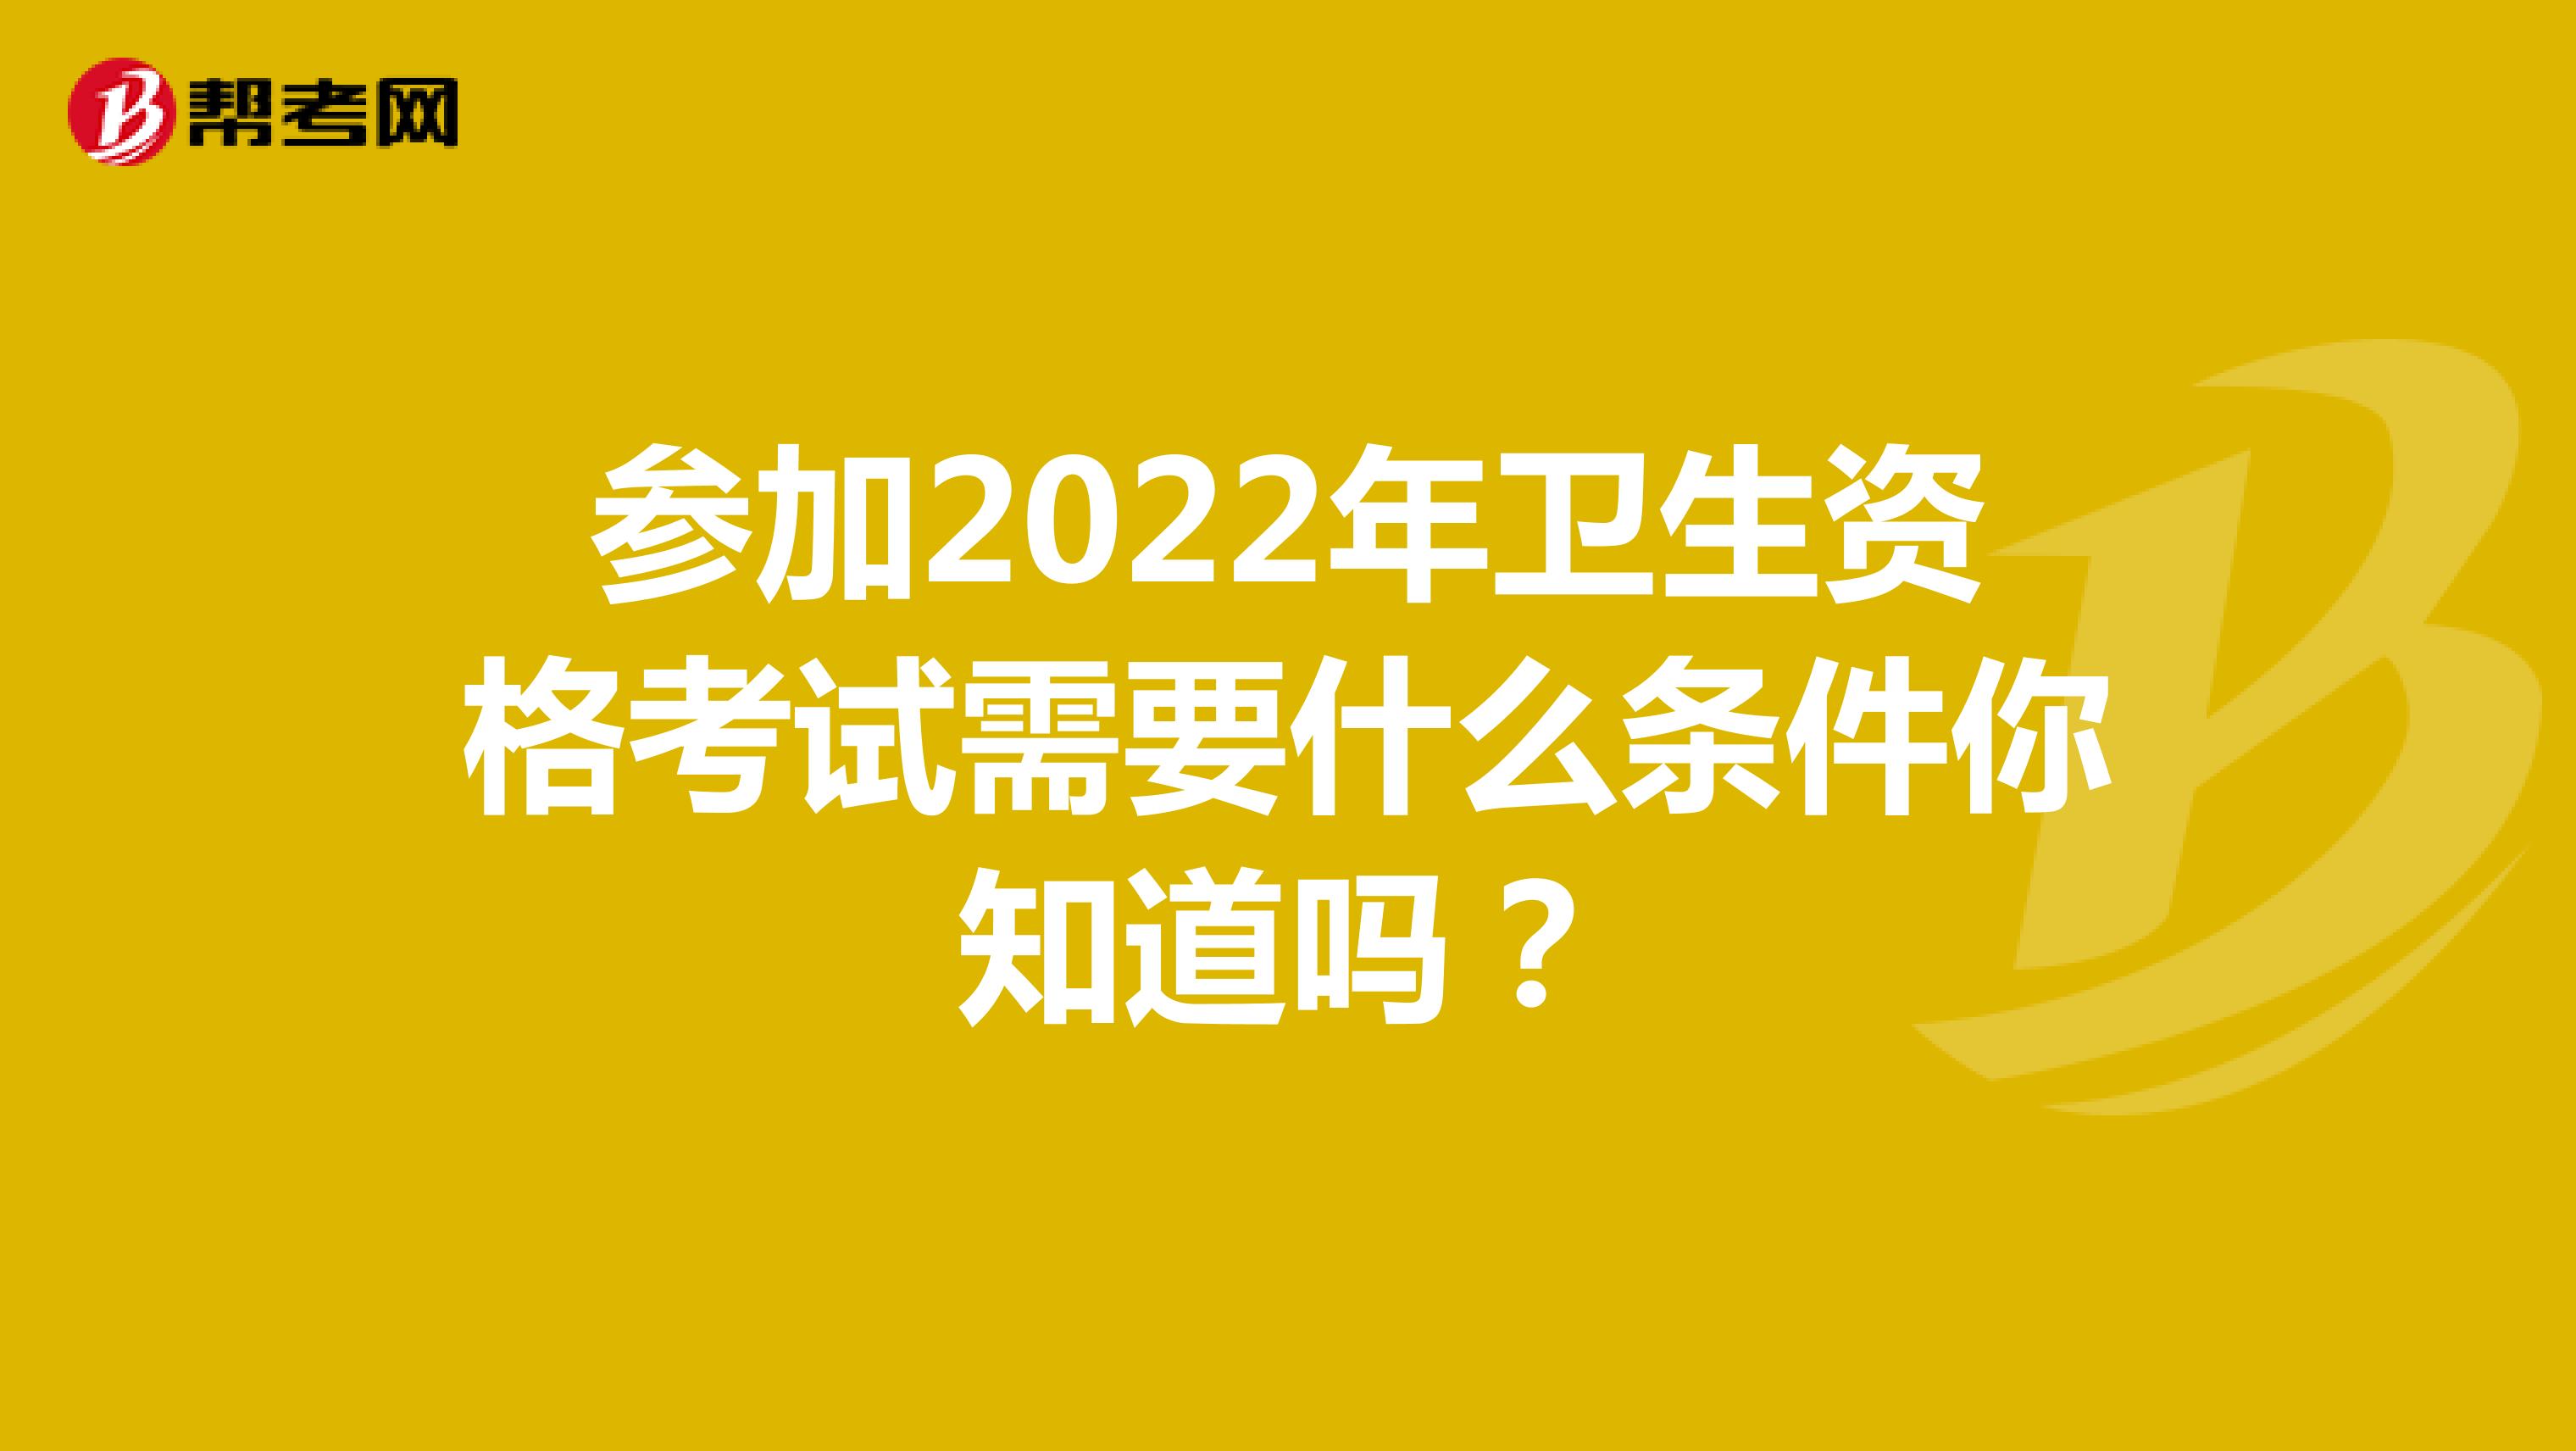 参加2022年卫生资格考试需要什么条件你知道吗？